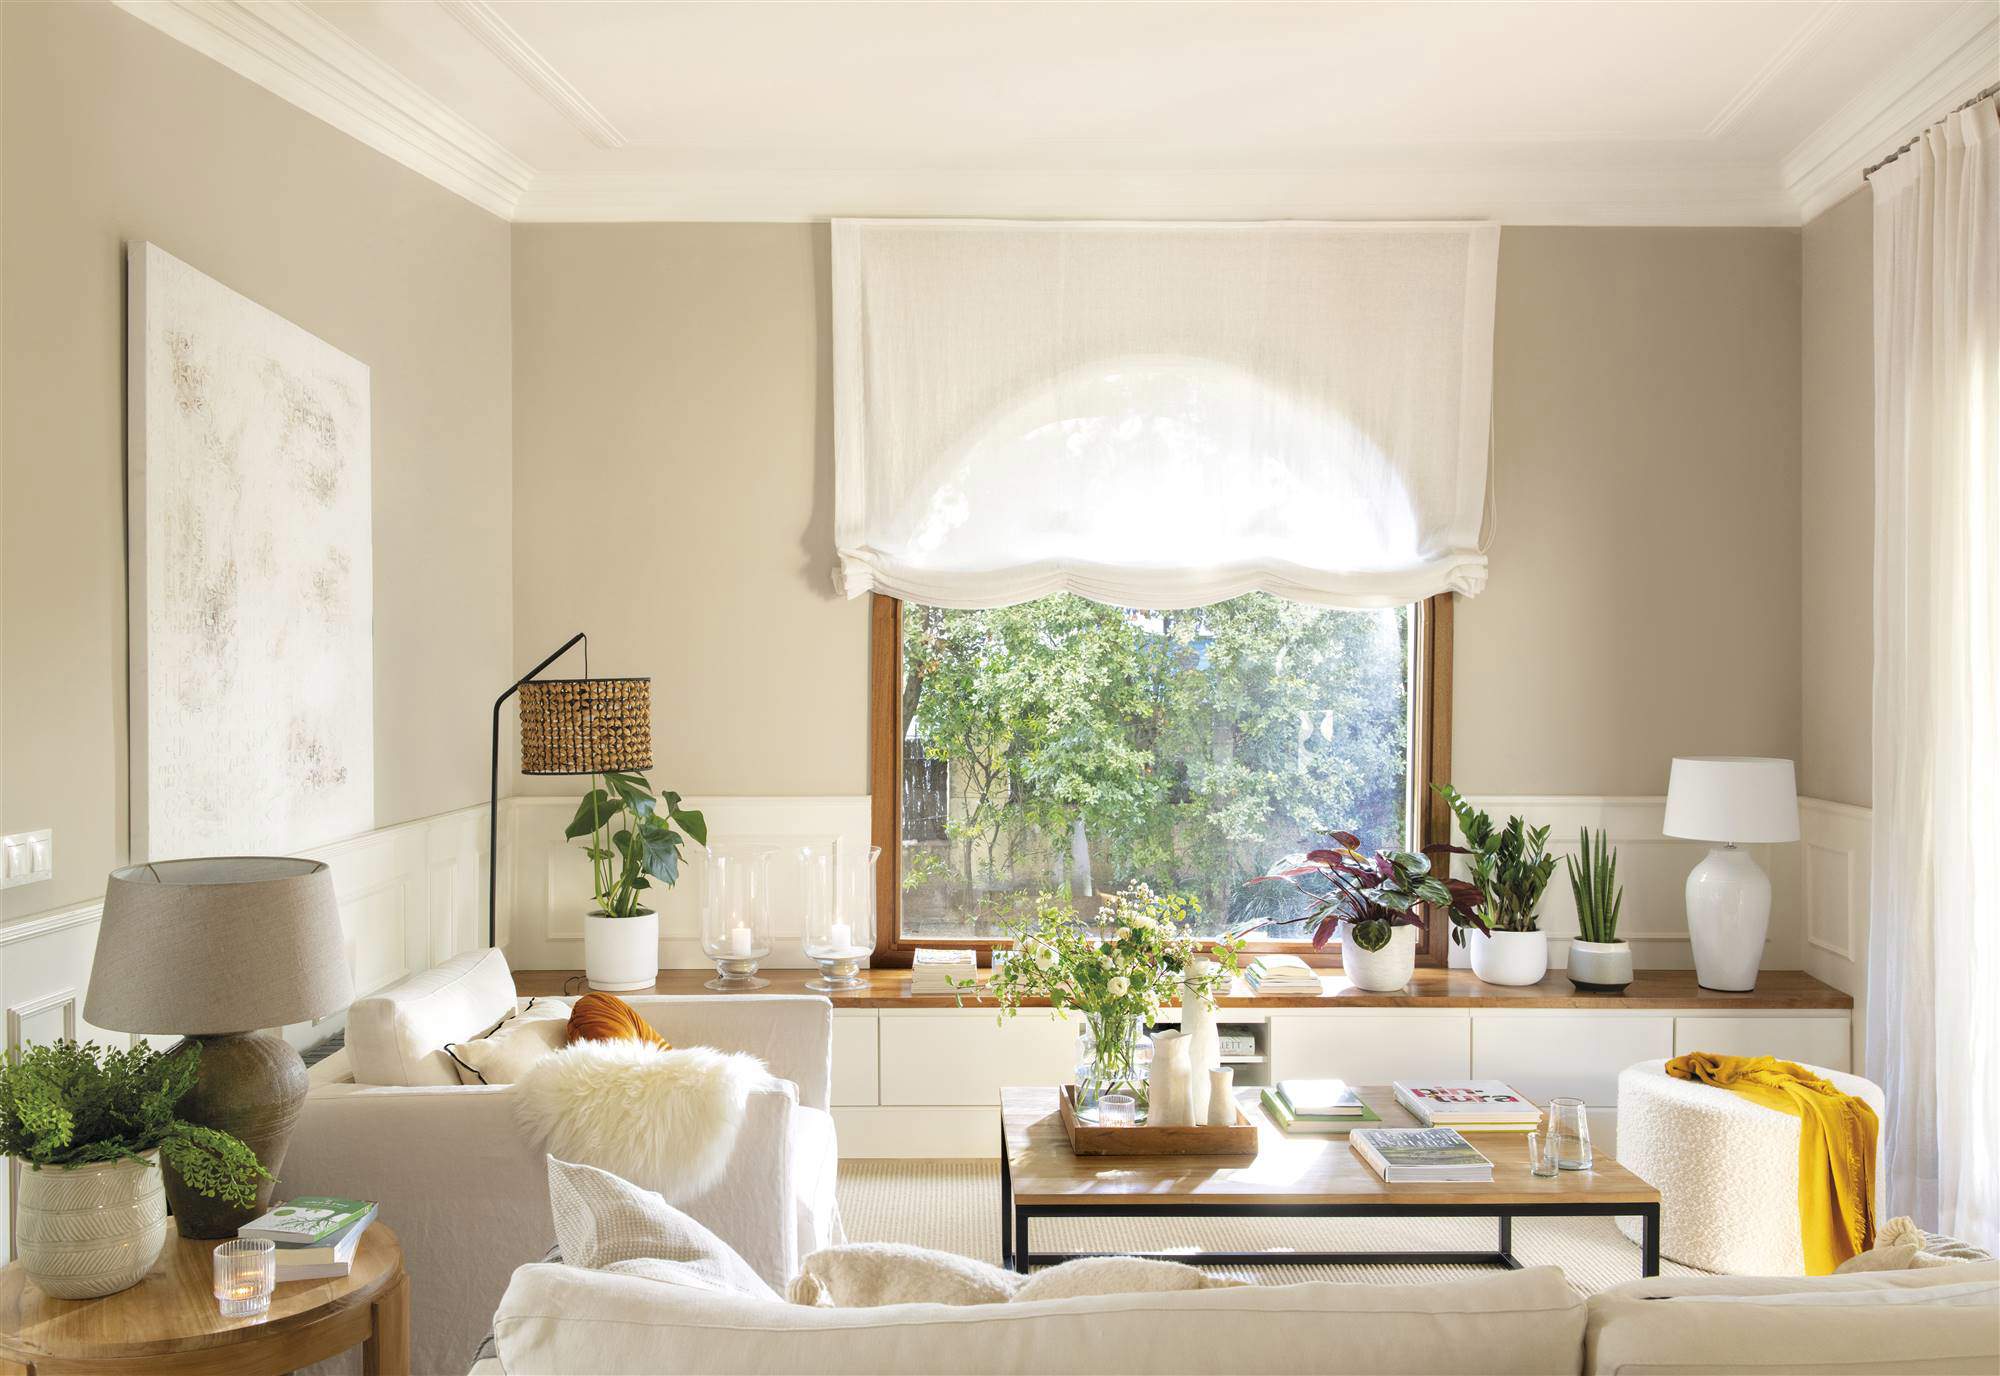 Un salón blanco y gris con mueble a medida bajo la ventana.